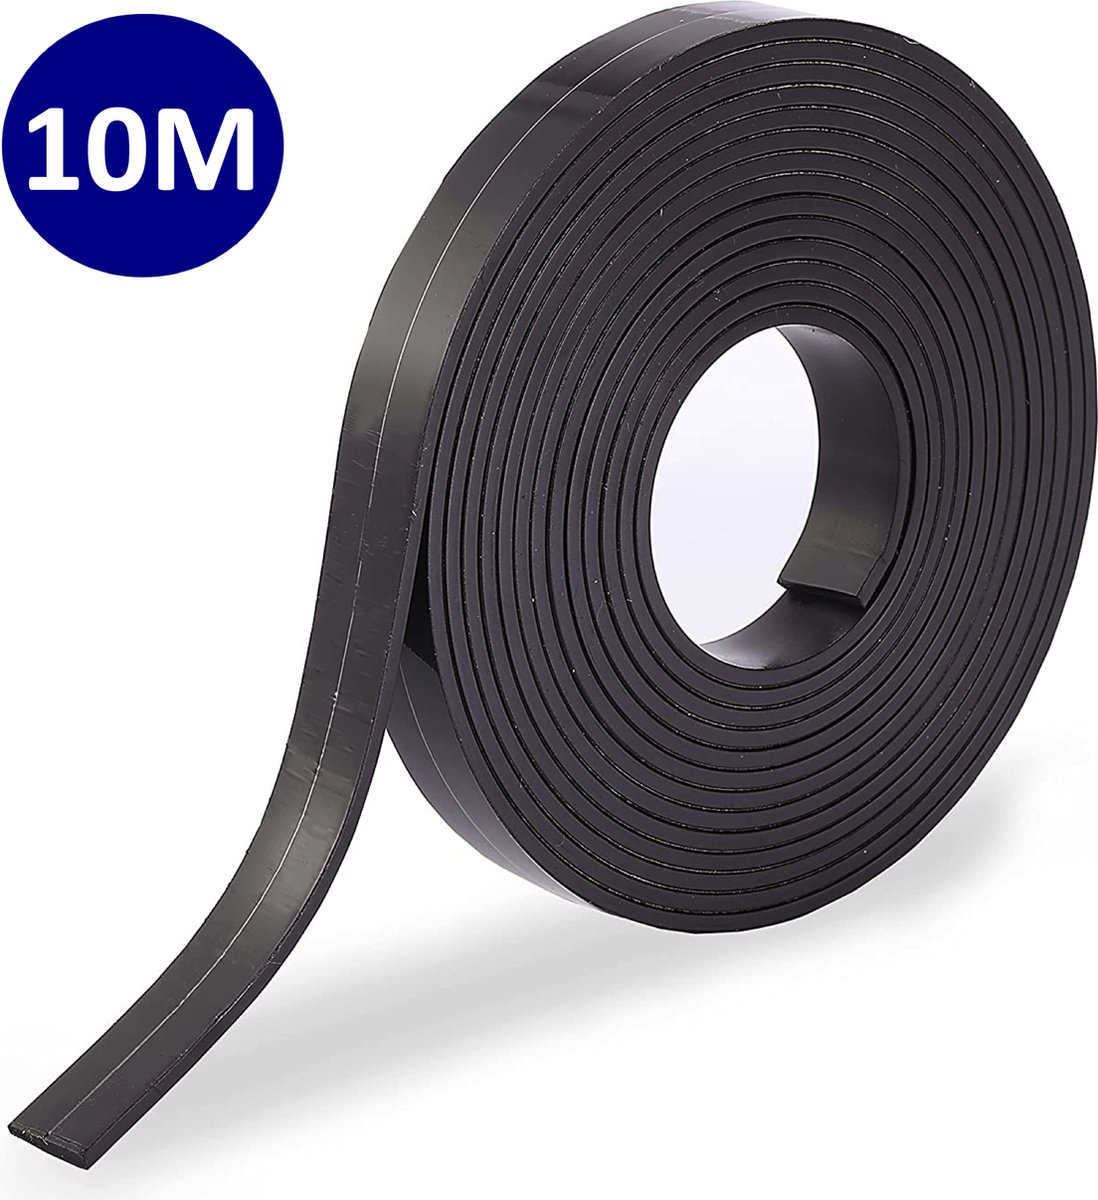 Nordevik® Magneettape - 10 meter - Magneetband met plakstrip - Zelfklevende magneetstrip - Geschikt voor radiatorfolie - Nordevik